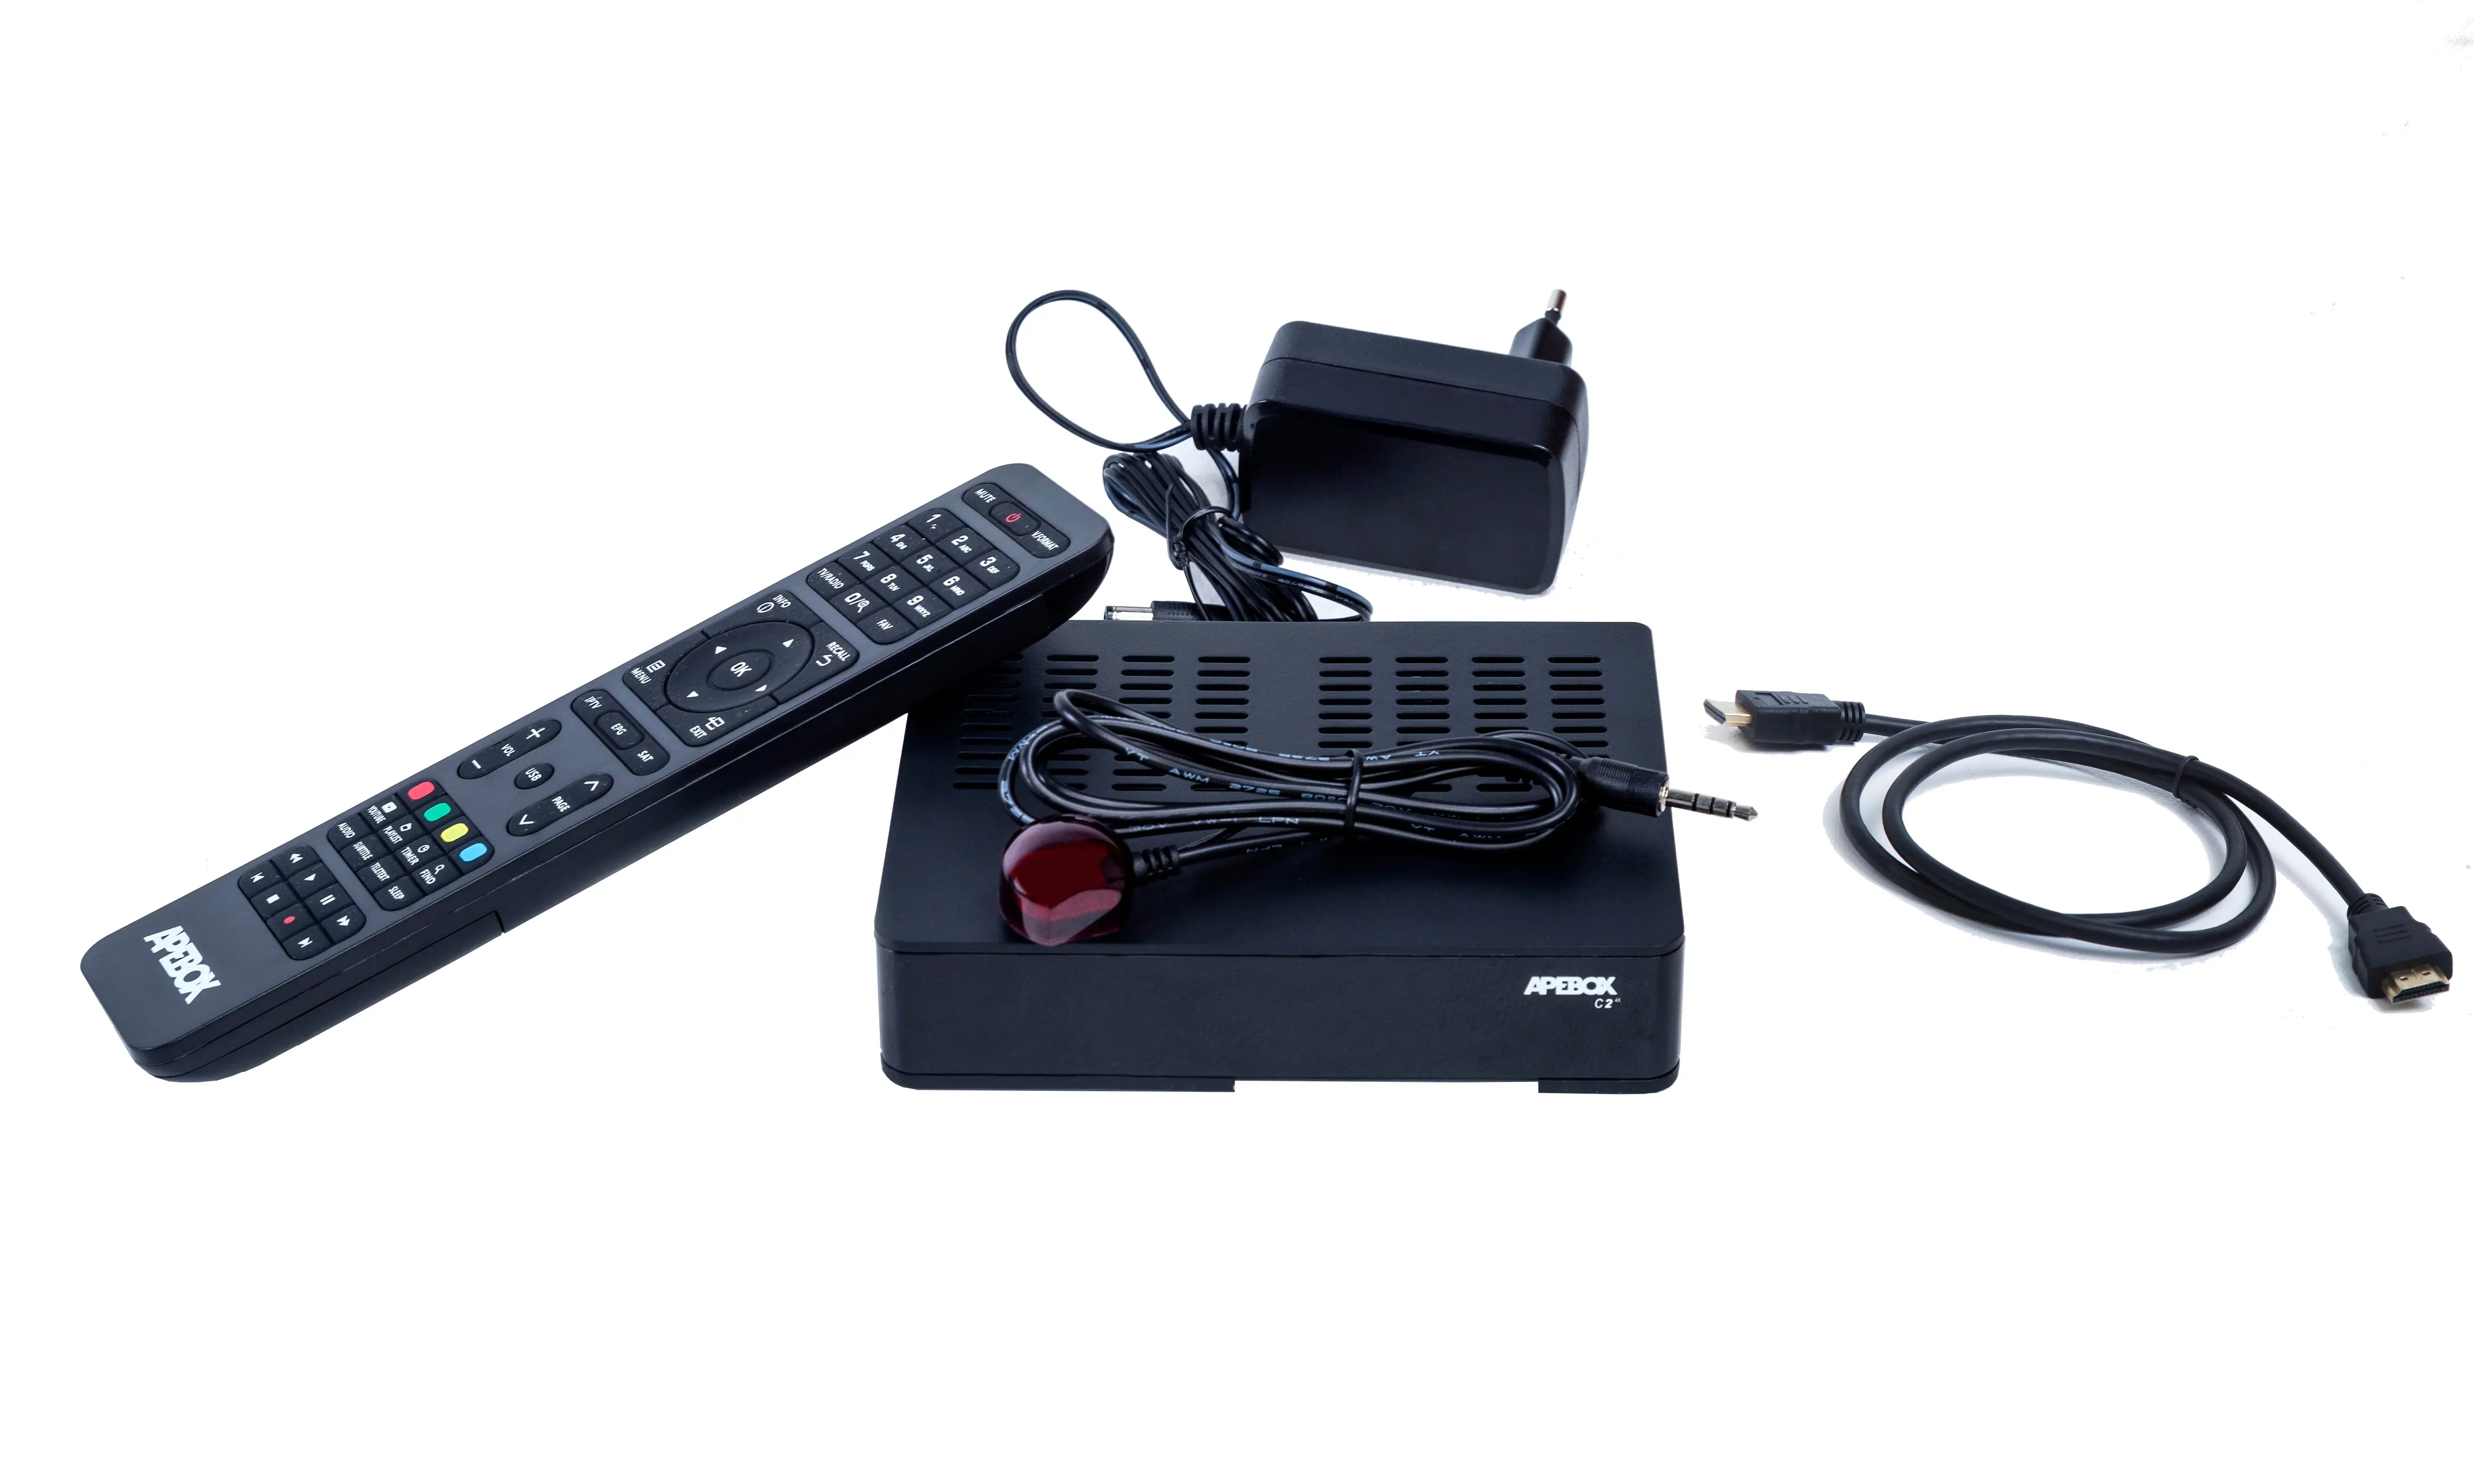 APEBOX C2 4K UHD COMBO DVB-S2X MS DVB-T2/C H.265 IPTV - - telewizja naziemna nowej generacji